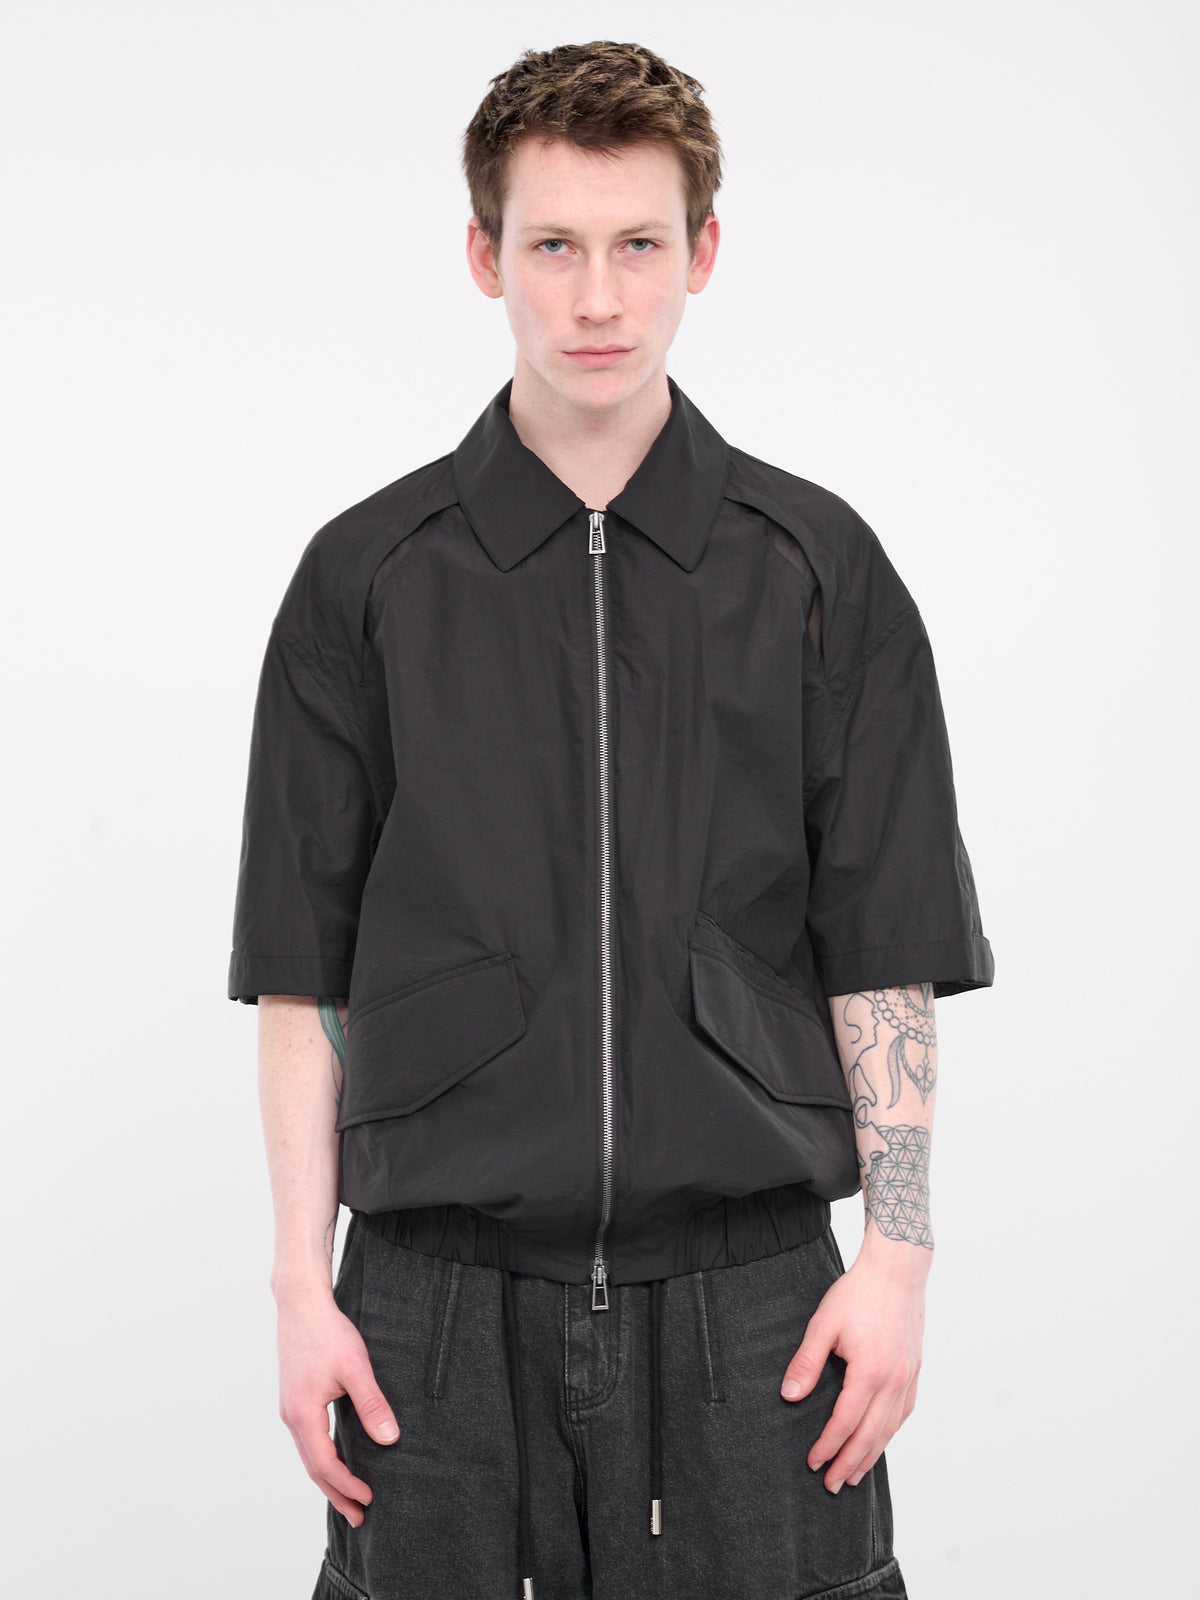 Cocoon Short Sleeve Jacket (SSG3JP701BK-BLACK)